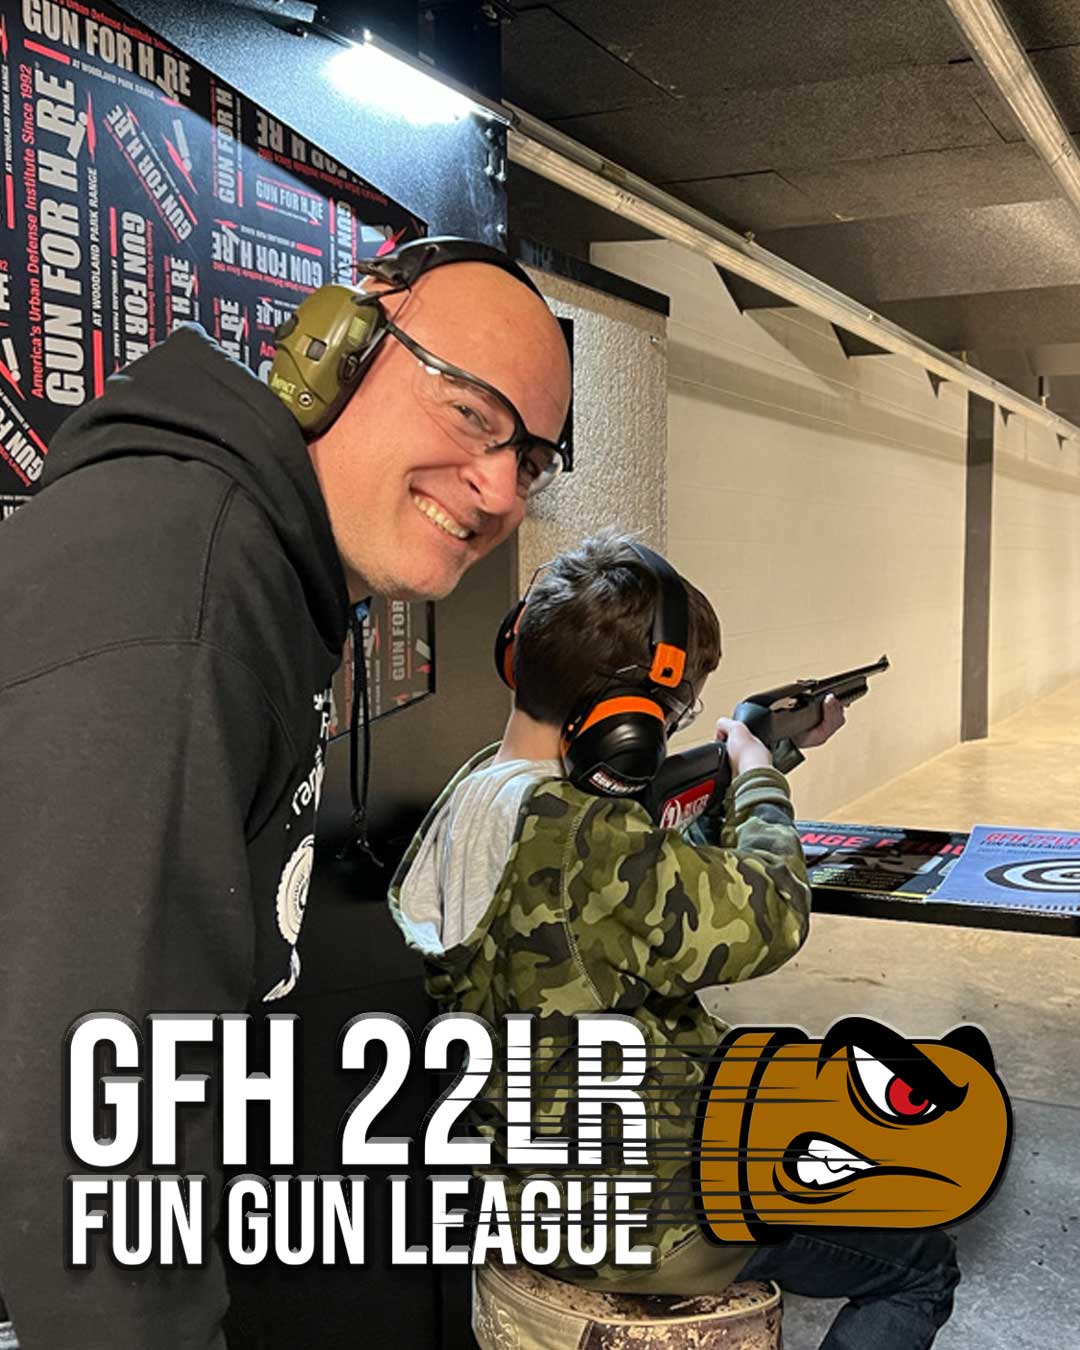 22 fun gun league - Gun For Hire